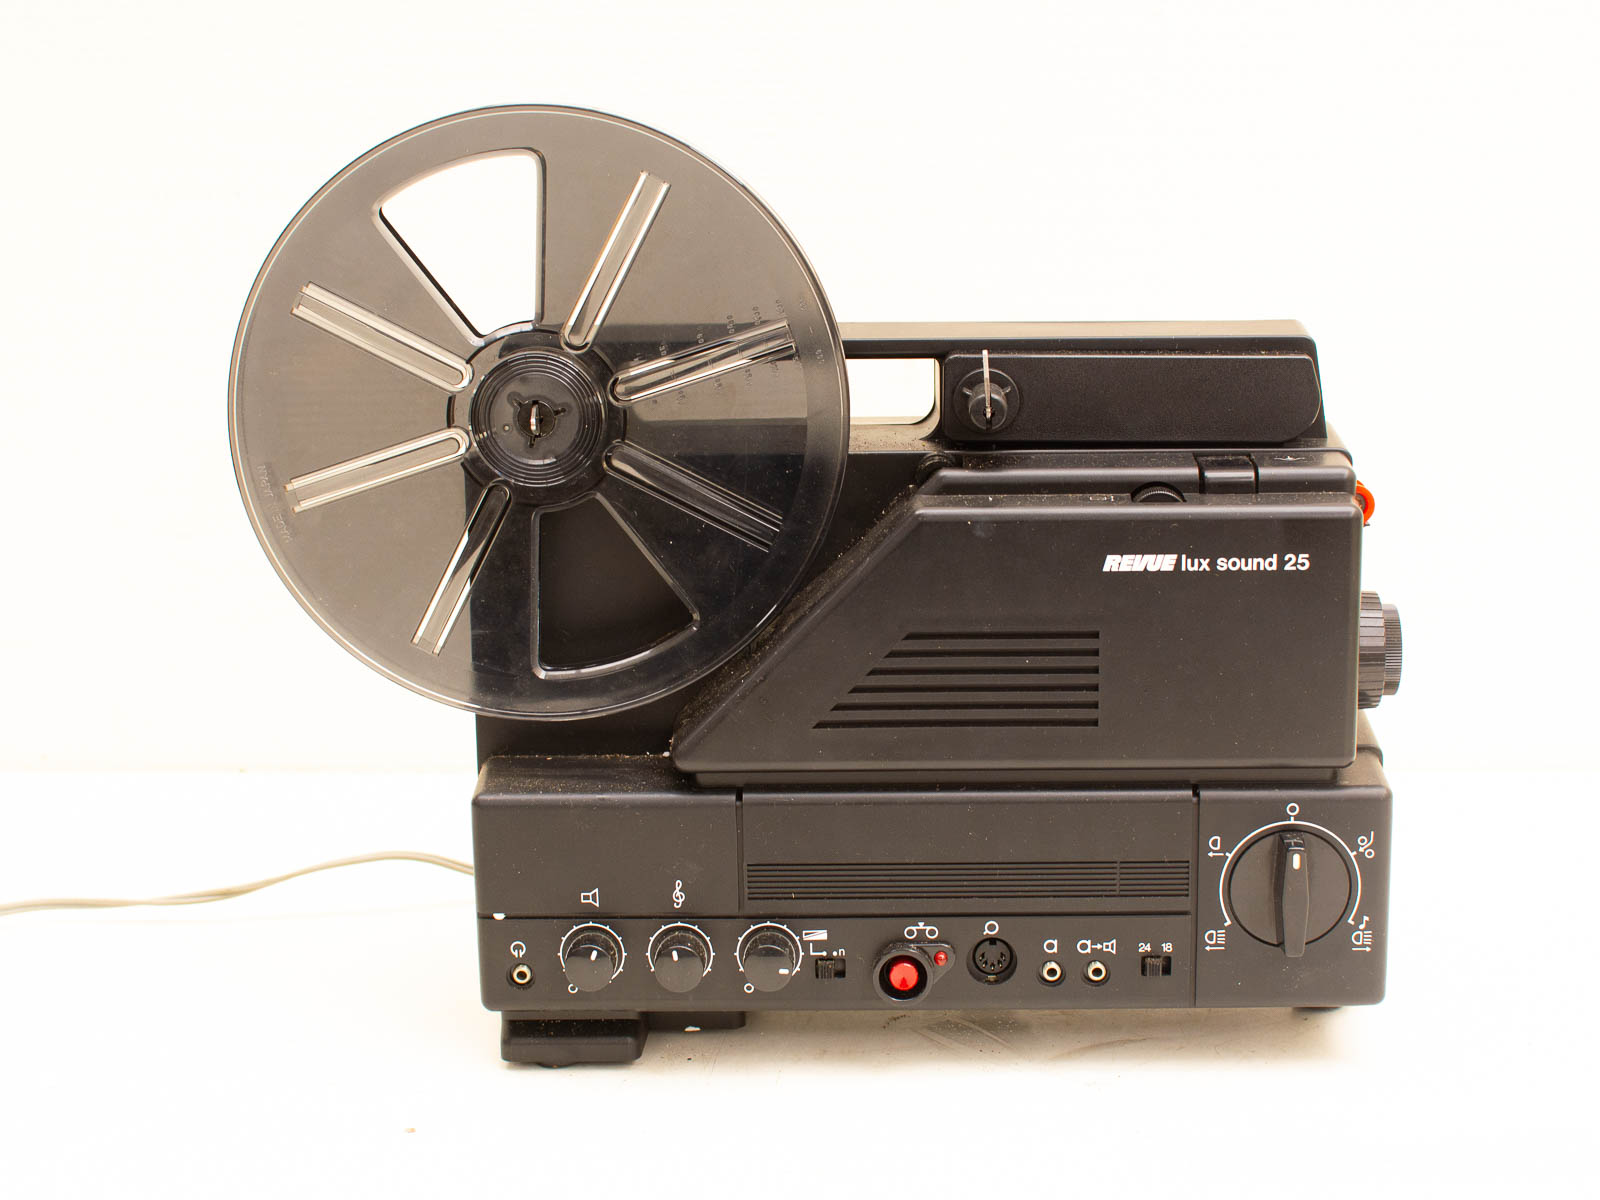 Revue lux sound filmprojector  31852